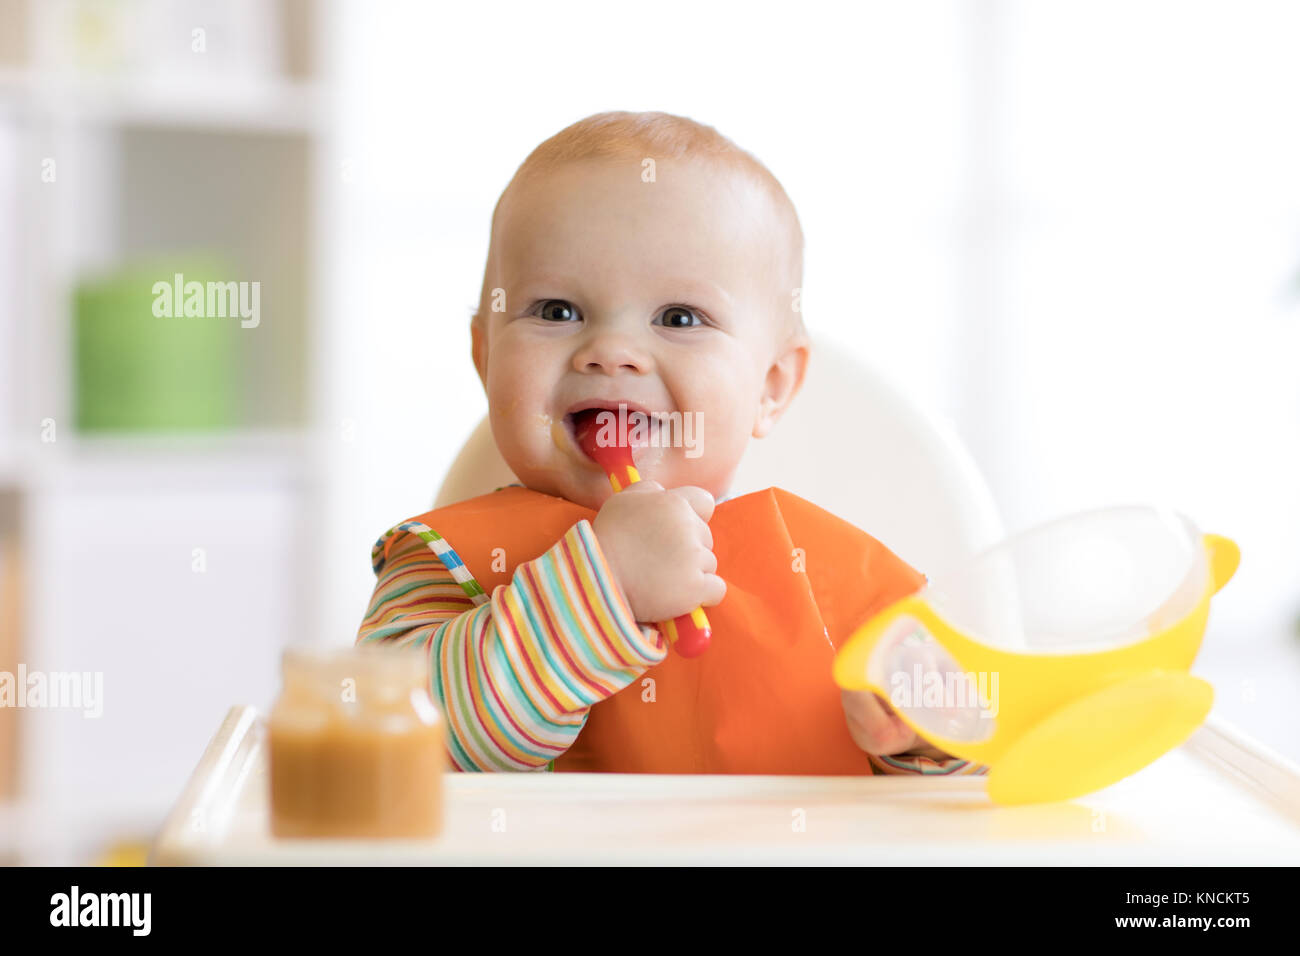 Heureux bébé garçon bébé mange la cuillère elle-même Banque D'Images